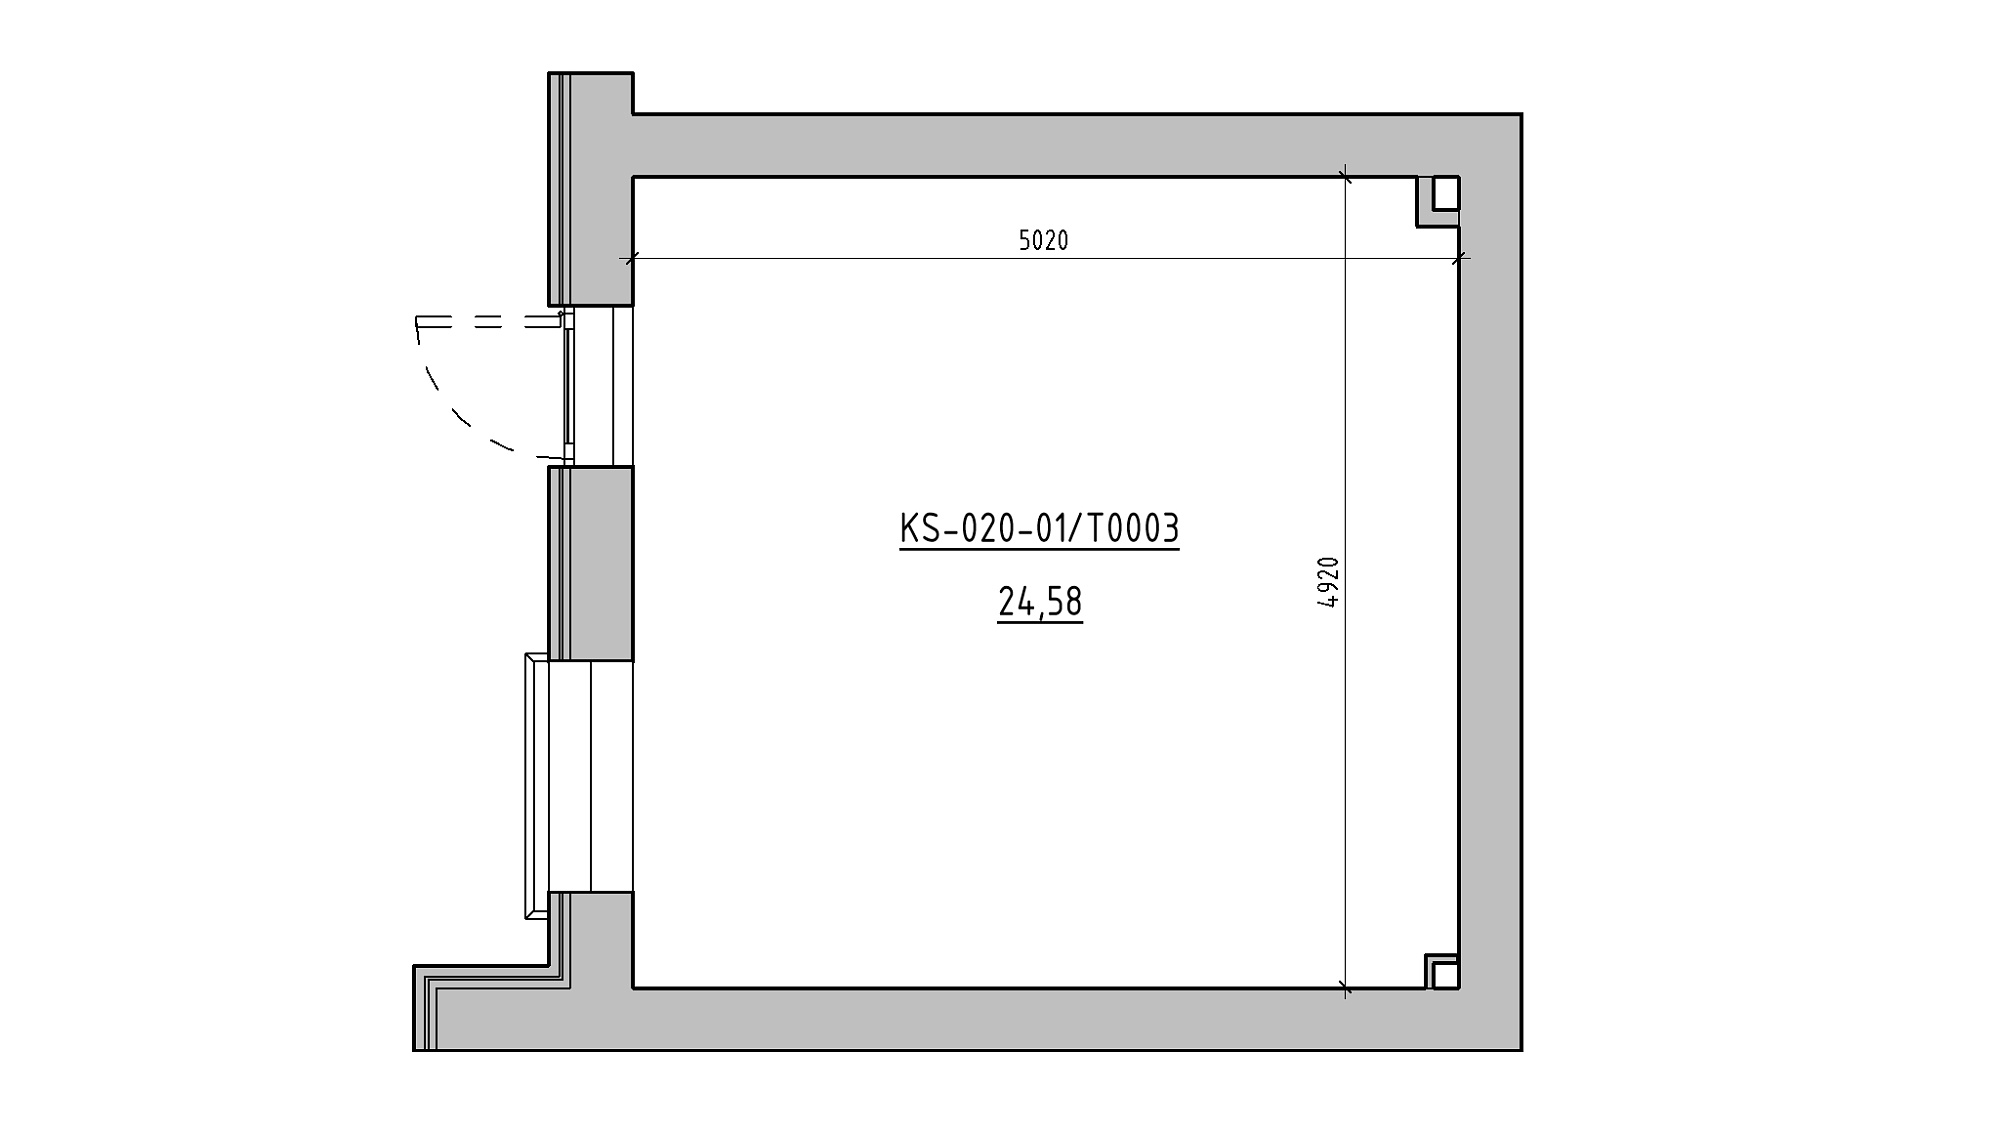 Planning Commercial premises area 24.58m2, KS-020-01/Т003.